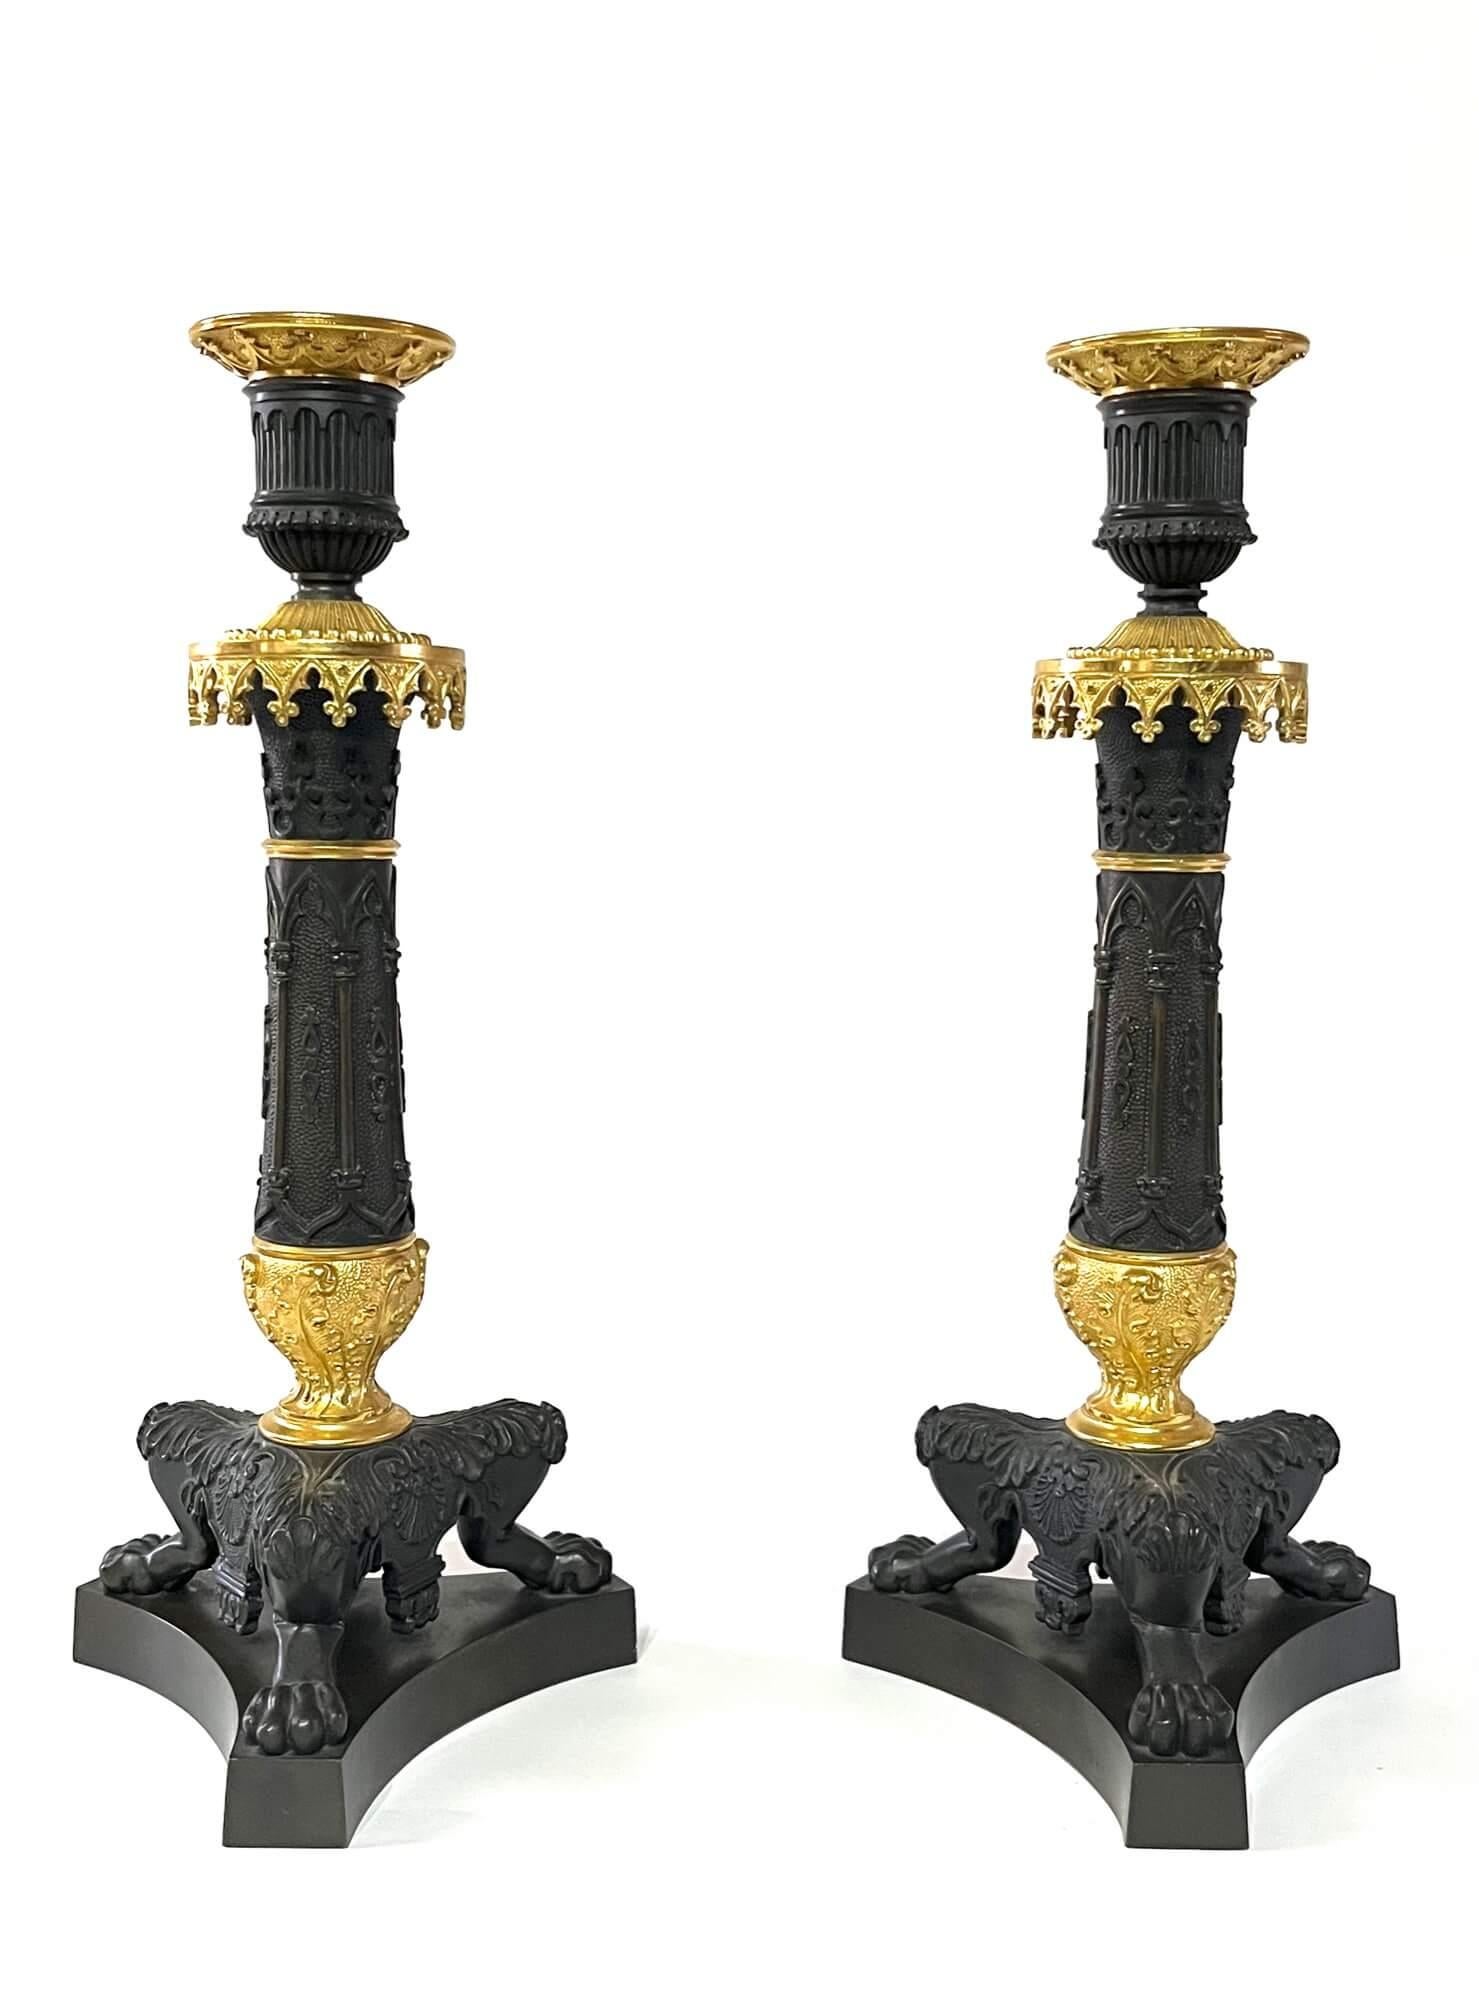 Ein feines Paar patinierter und ormolierter Bronzeleuchter im gotischen Stil aus der Zeit der französischen Restauration um 1825. Das ungewöhnliche Design ist typisch für das erste 